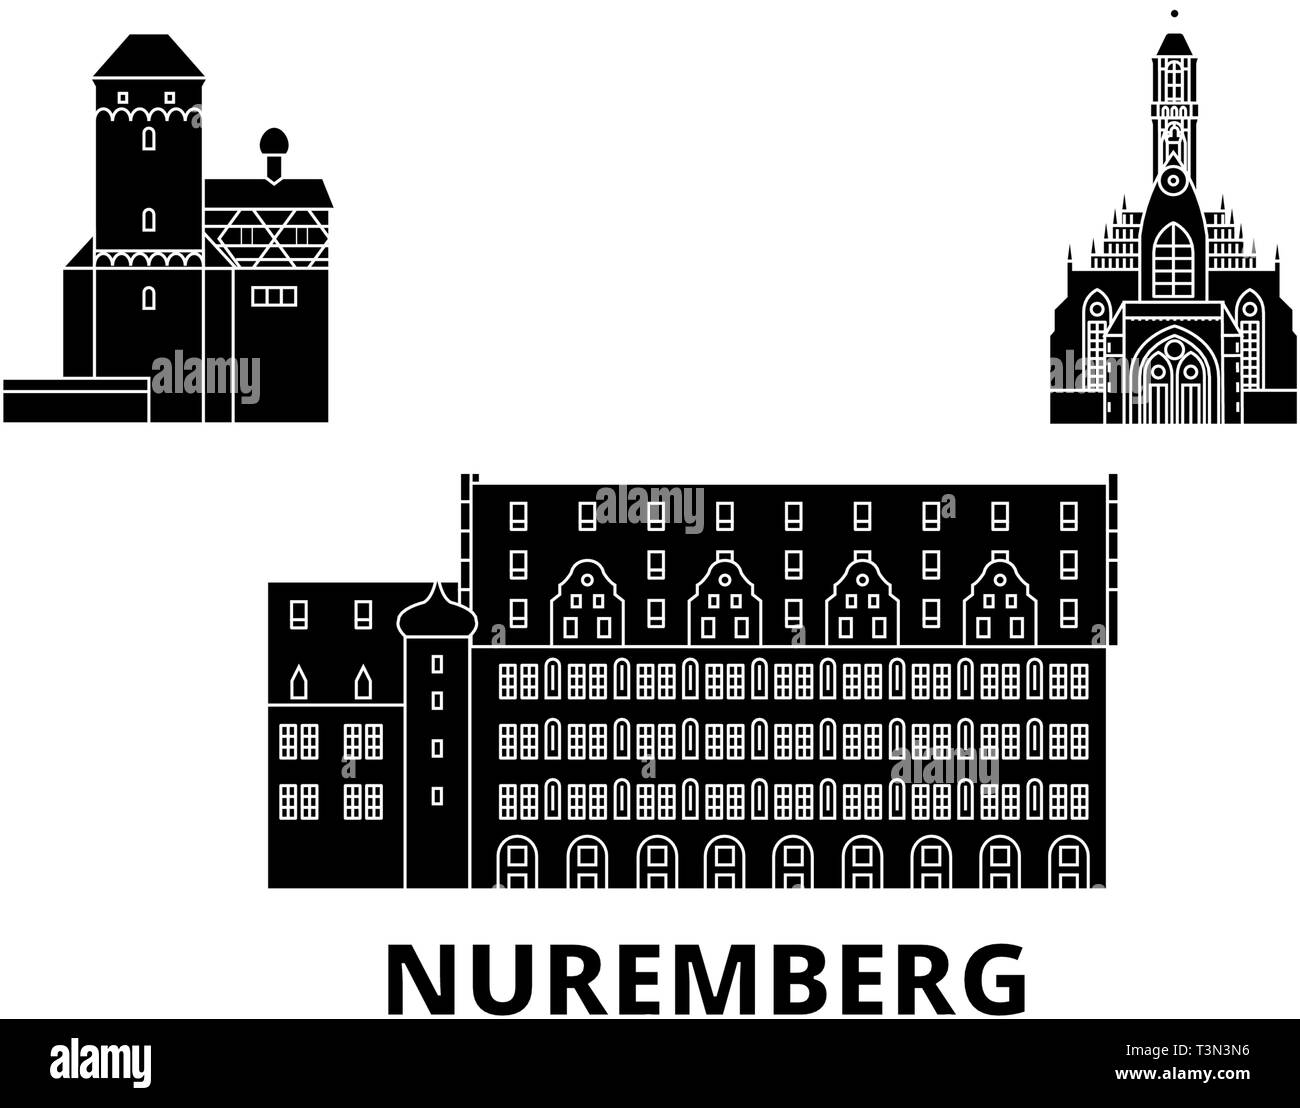 Allemagne, Nuremberg télévision billet skyline set. Allemagne, Nuremberg ville noire, symbole d'illustration vectorielle, les sites touristiques, sites naturels. Illustration de Vecteur